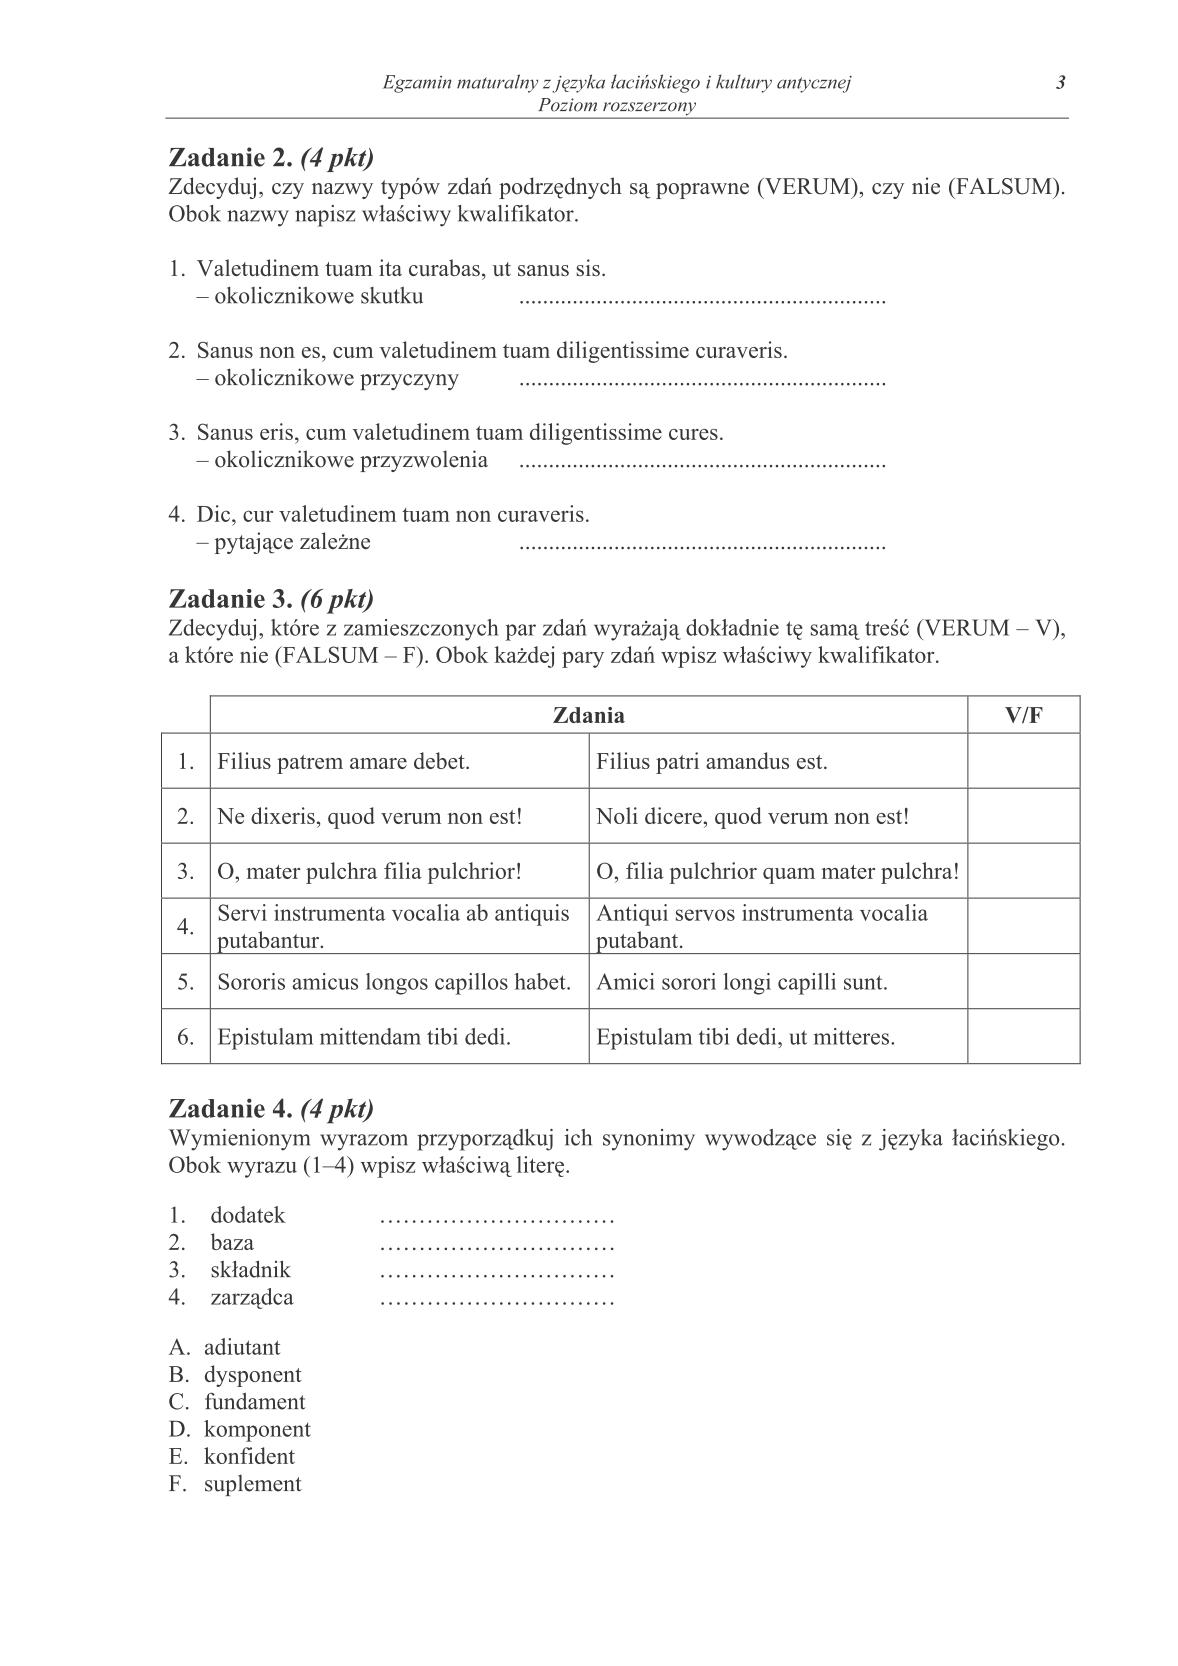 pytania-jezyk-lacinski-i-kultura-antyczna-poziom-rozszerzony-matura-2014-str.3